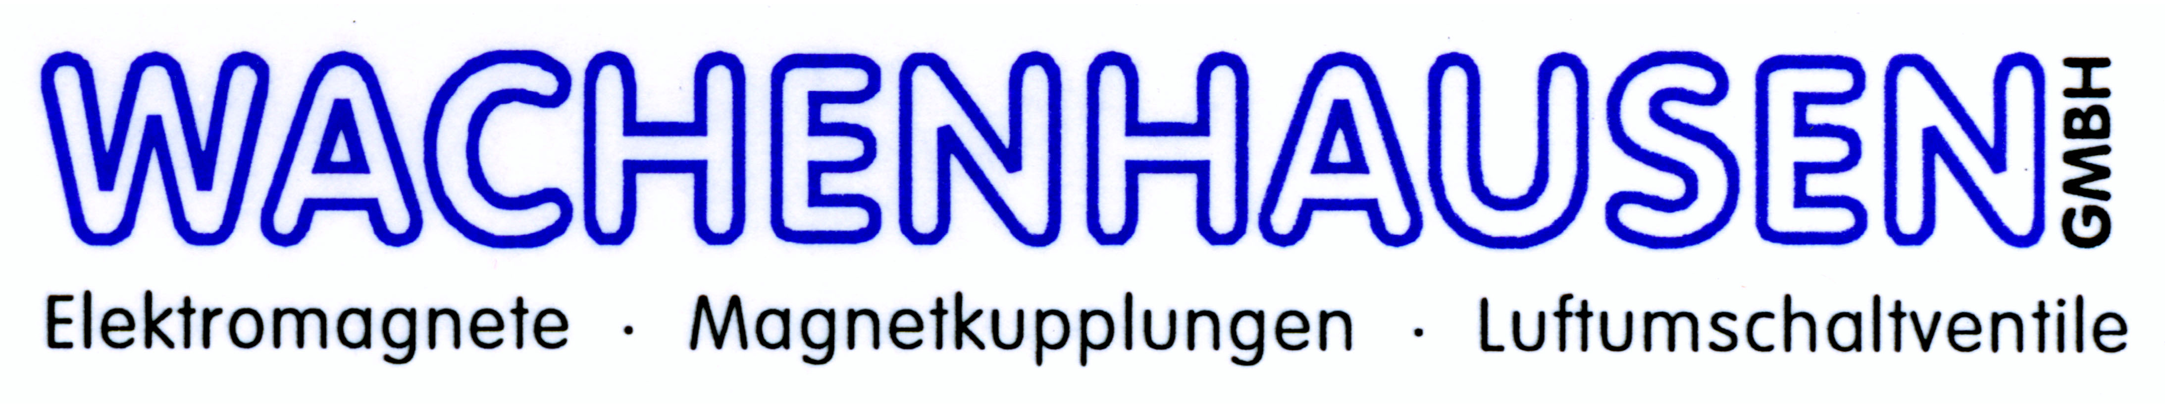 Louis Wachenhausen GmbH